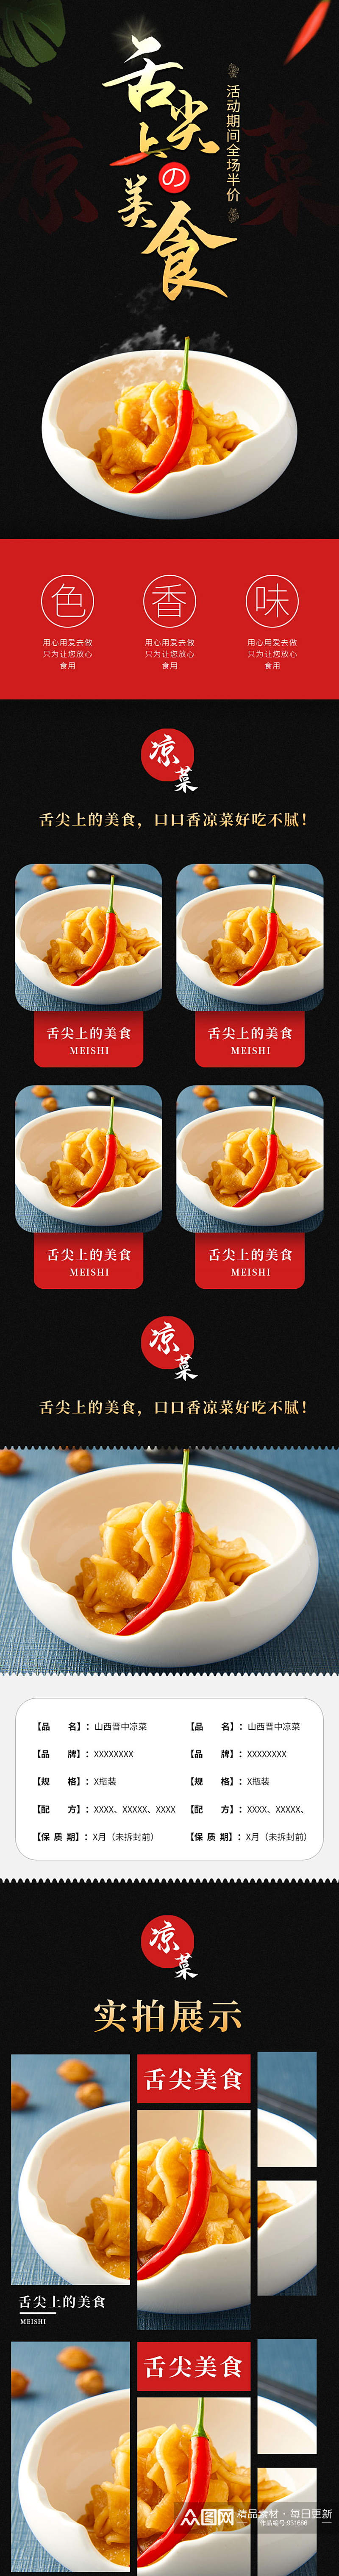 天猫中国风舌尖上的美食凉菜详情页模板素材